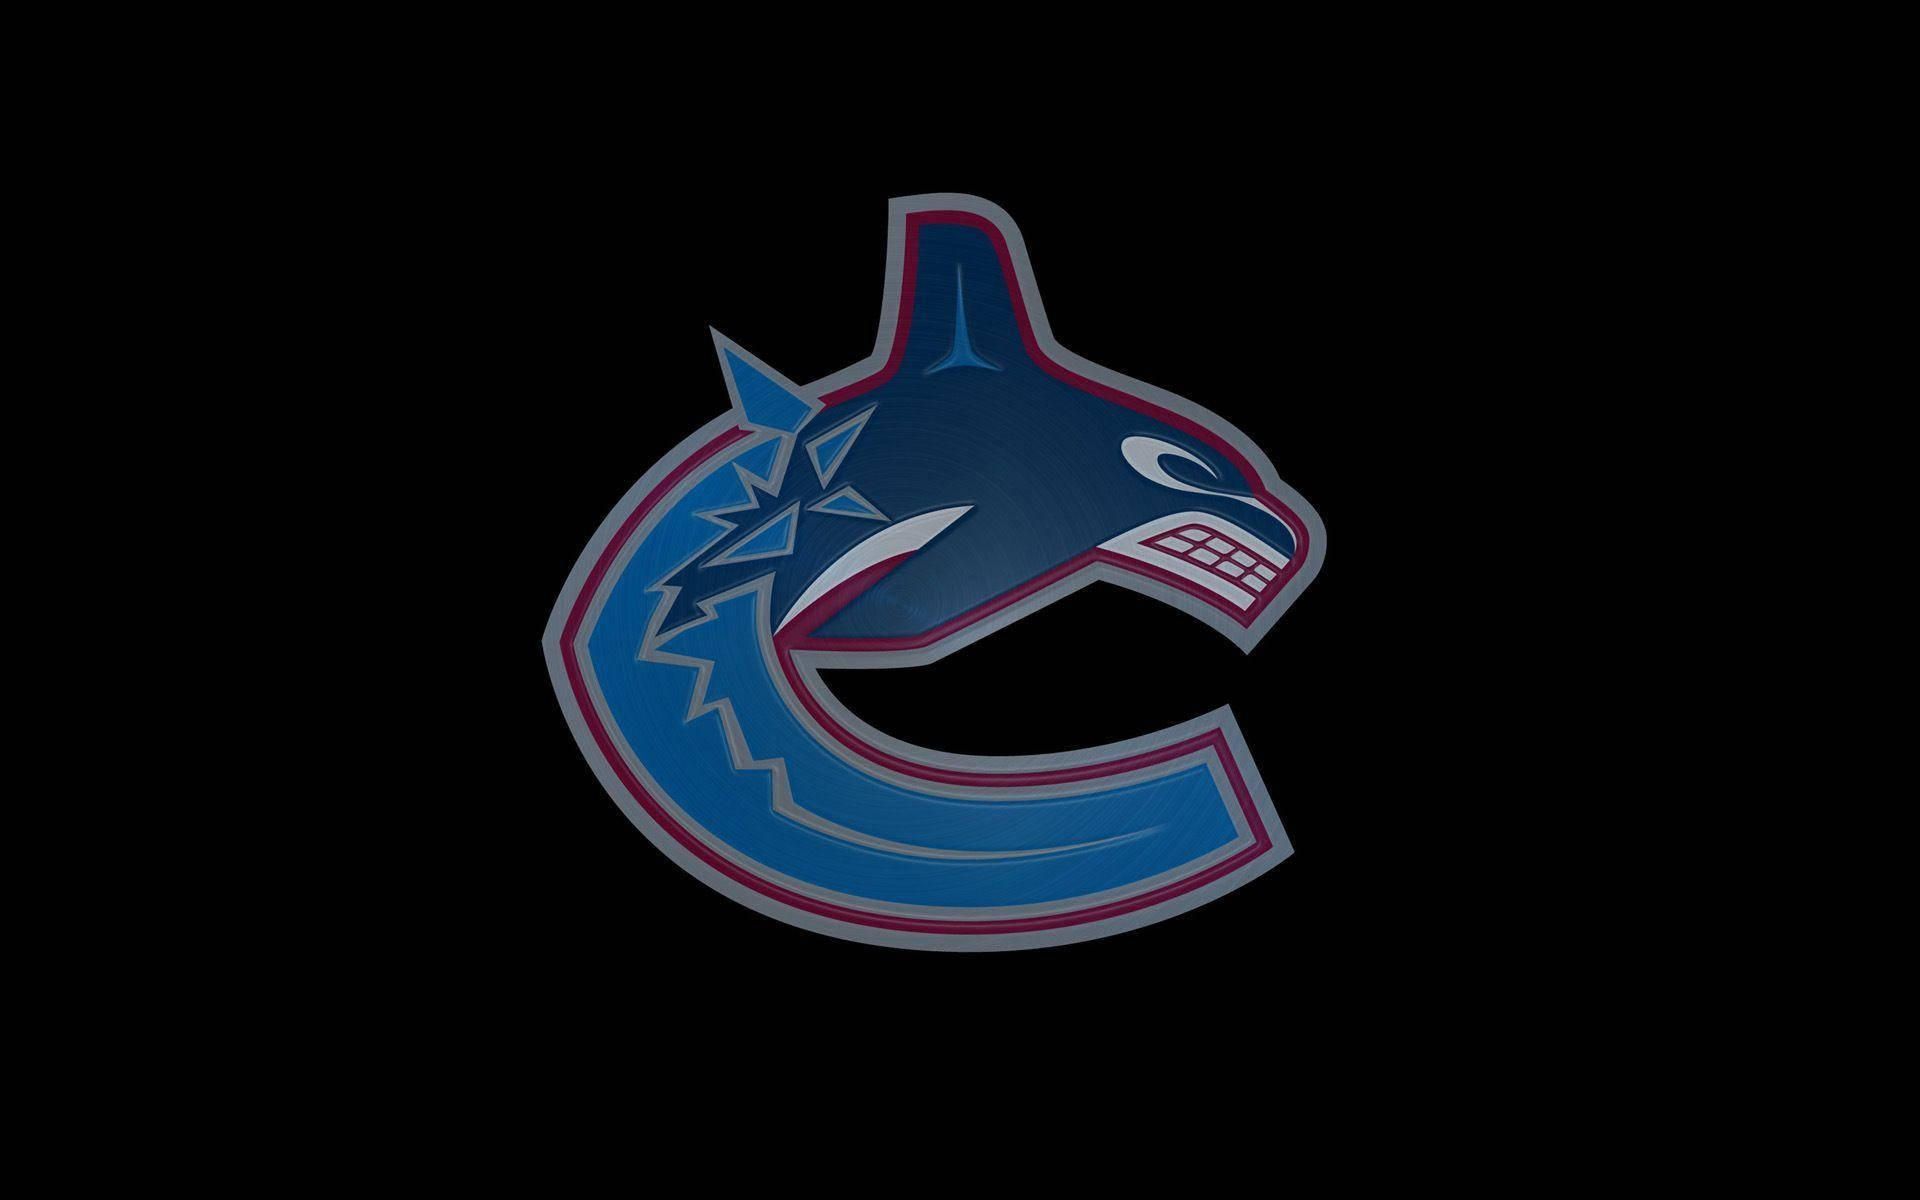 Logotipode Los Vancouver Canucks En Negro. Fondo de pantalla